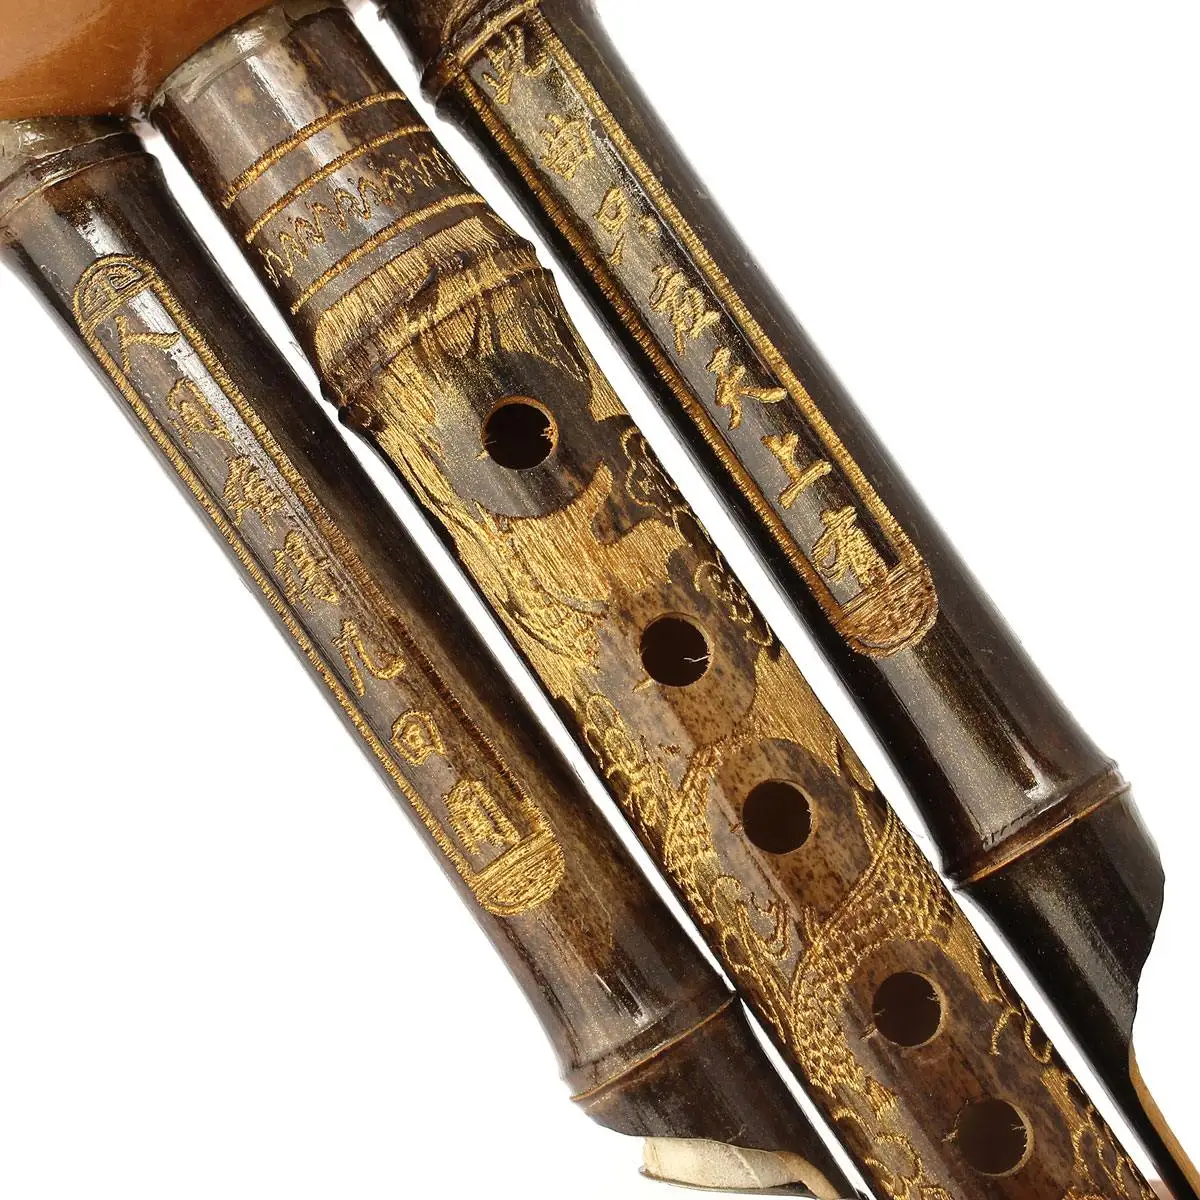 Бамбук+ пластик Китайская традиционная флейта Хулуси кукурбит флейта Bb Юньнань Профессиональный этнический музыкальный инструмент+ китайский узел